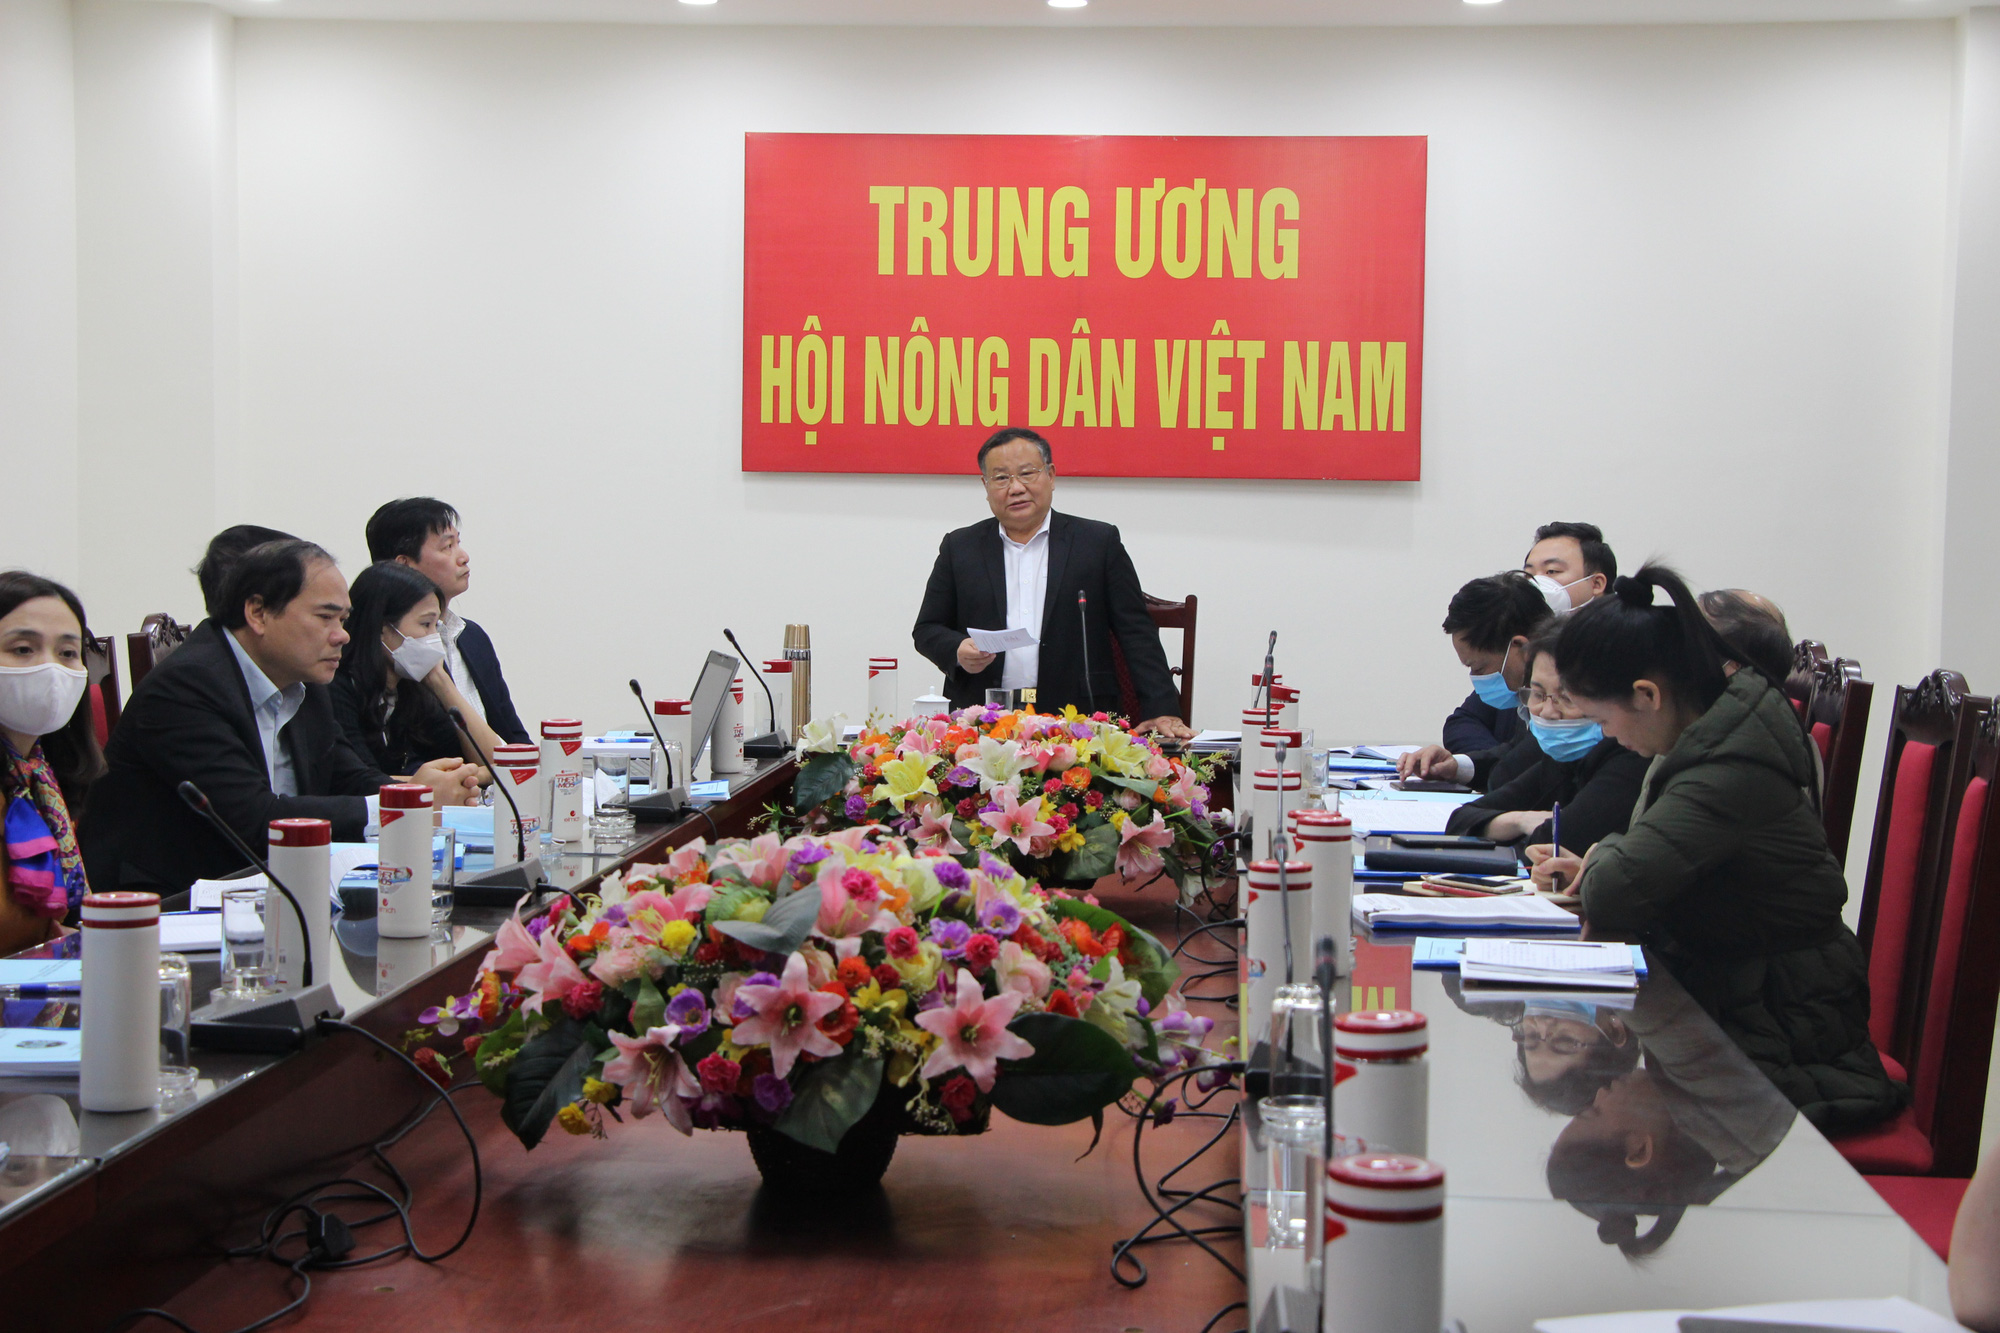 Phó Chủ tịch Hội NDVN Đinh Khắc Đính: Hỗ trợ nông dân miền Trung – Tây Nguyên phát triển kinh tế nông nghiệp bền vững- Ảnh 2.